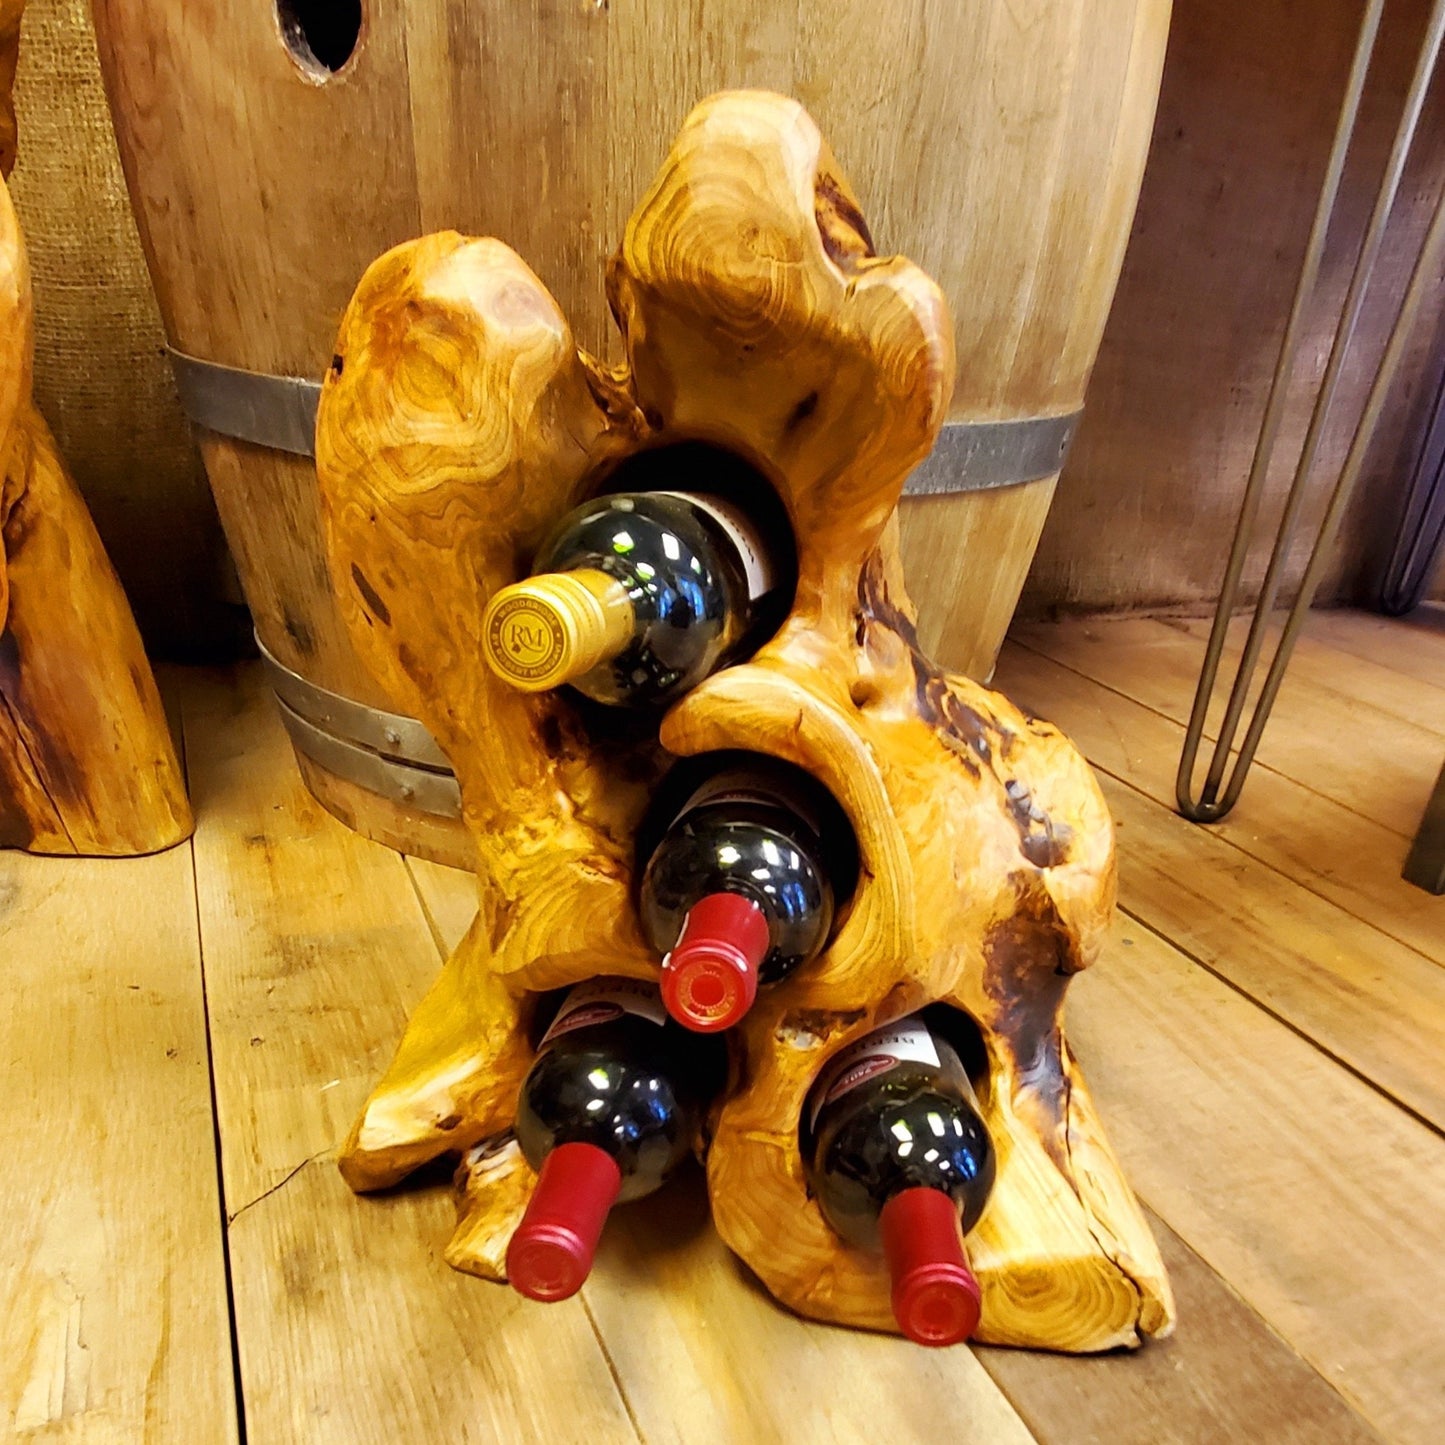 Reclaimed Wood Wine Bottle Holder 4 bottles